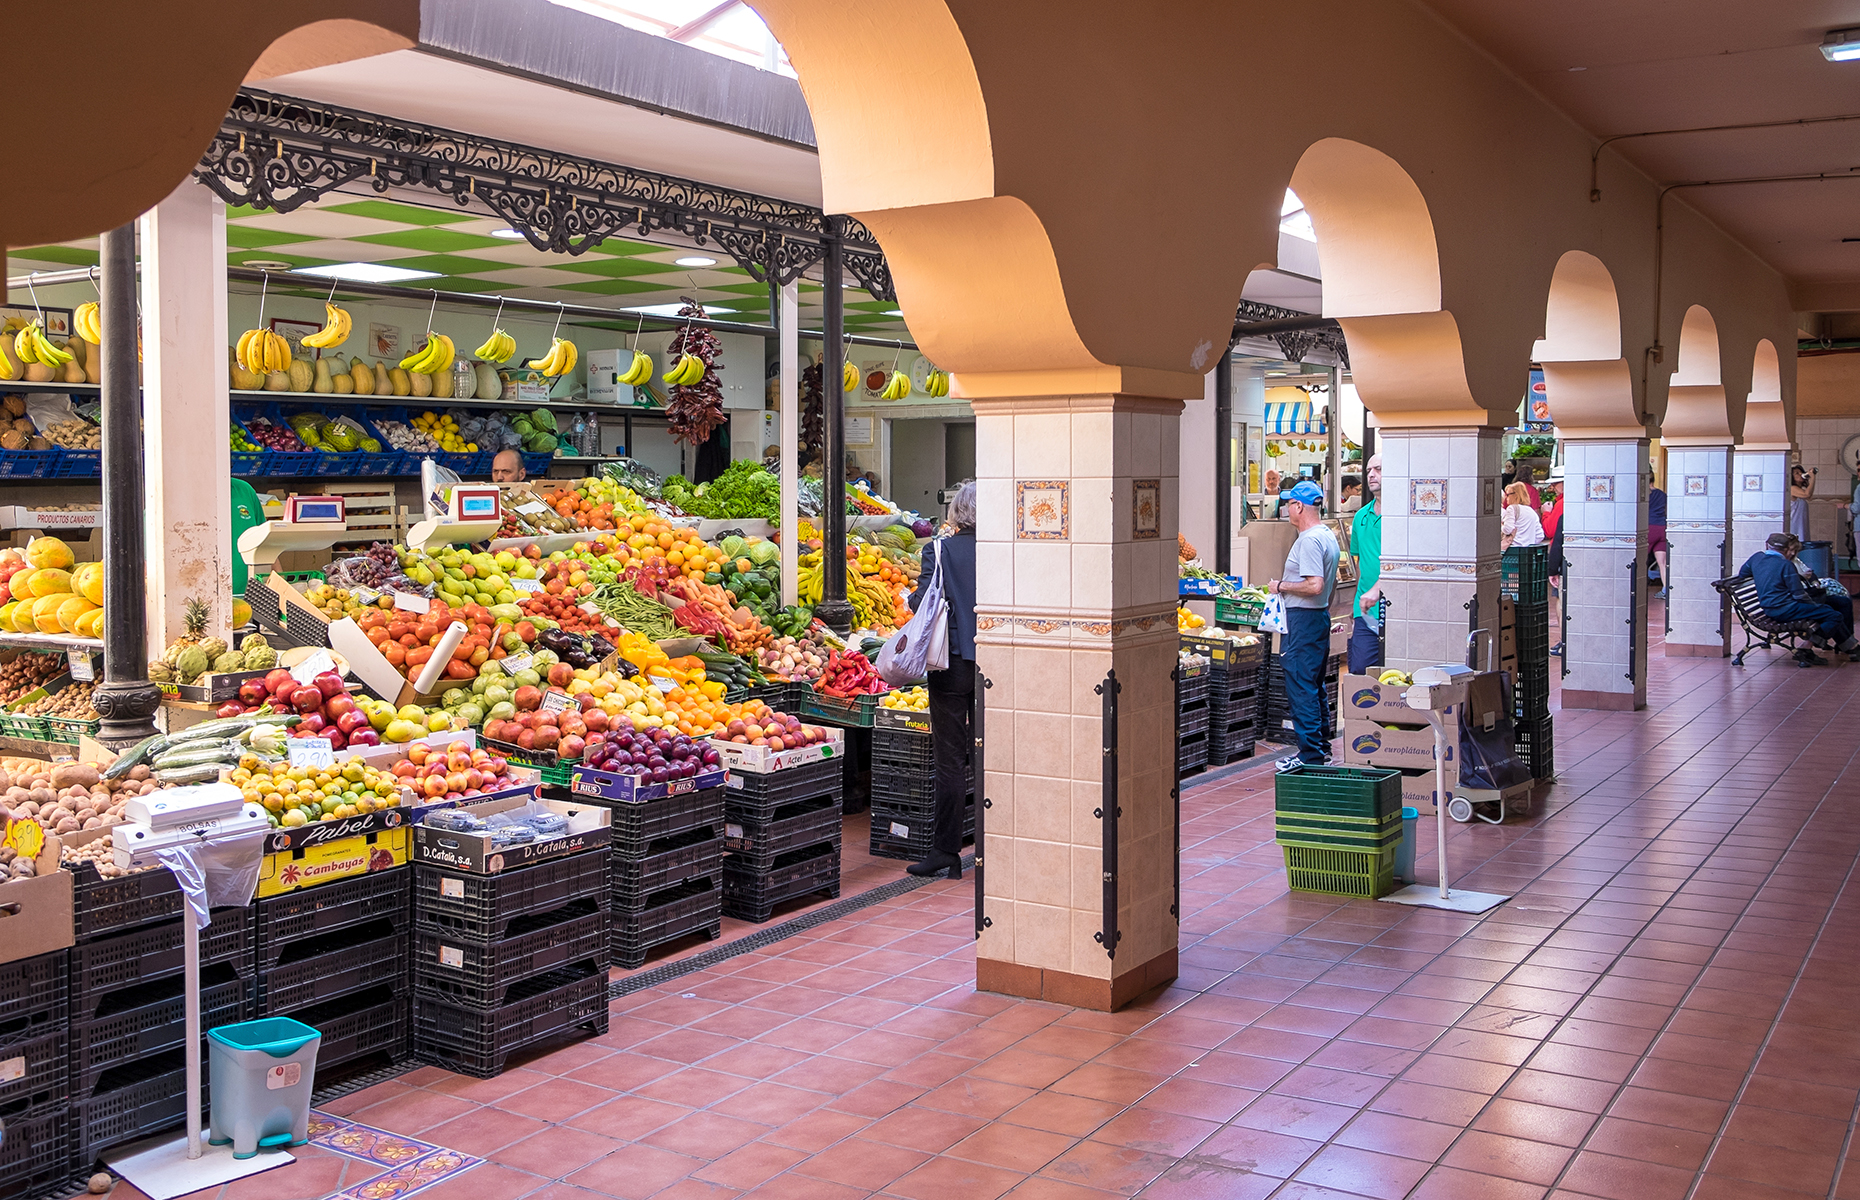 Mercado de Nuestra Señora de Africa, Santa Cruz, Tenerife. (Image: Salvador Aznar/Shutterstock)